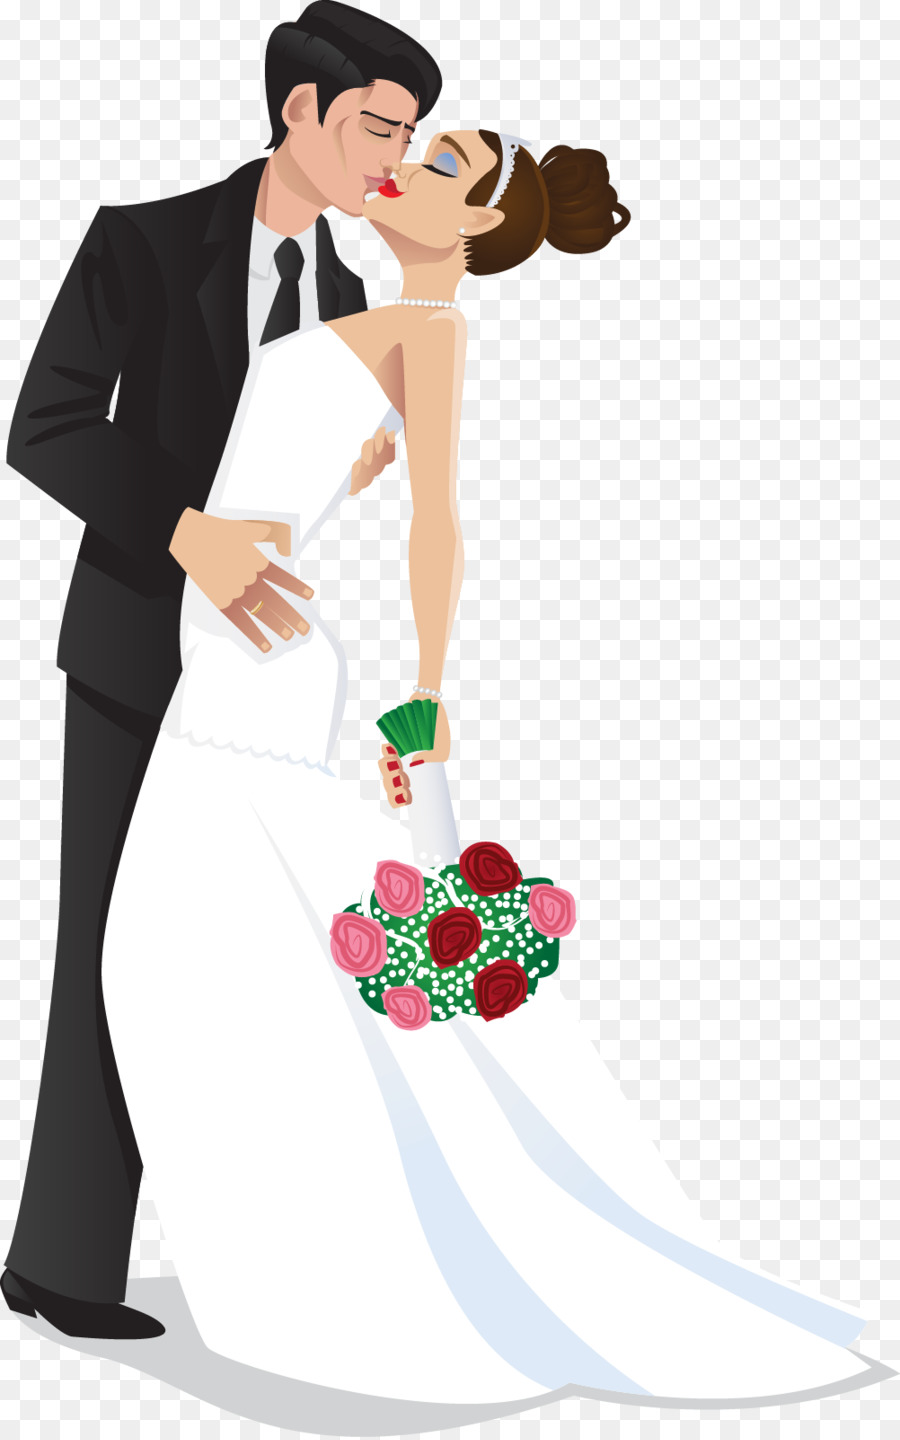 Wedding invitation Bridegroom Clip art - Dancing Bride Cliparts png download - 1002*1600 - Free Transparent  png Download.